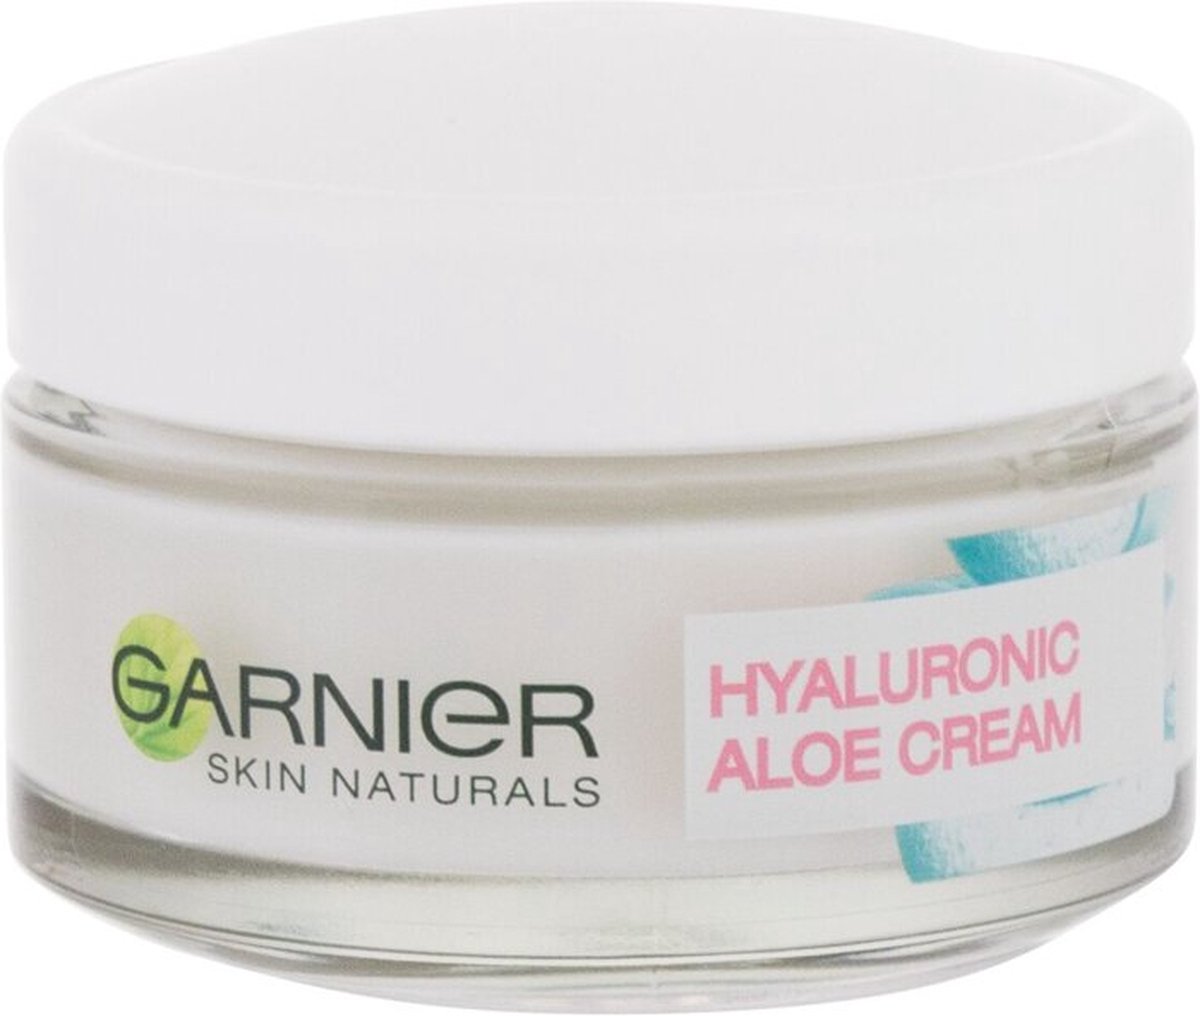 Garnier - Hyaluronic Aloe Cream - Nourishing Cream For Dry And Sensitive Skin